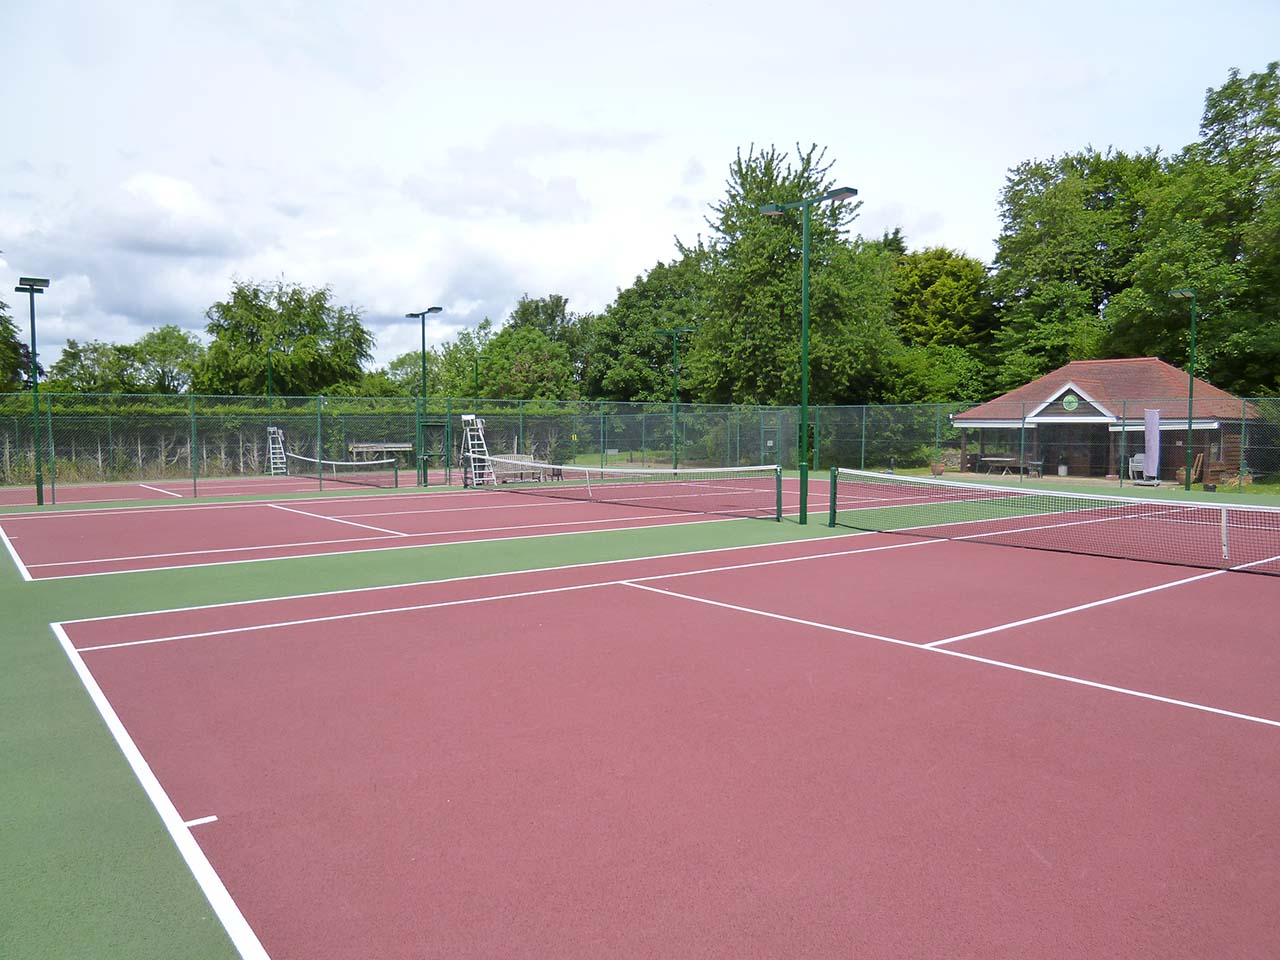 West Surrey Tennis Club